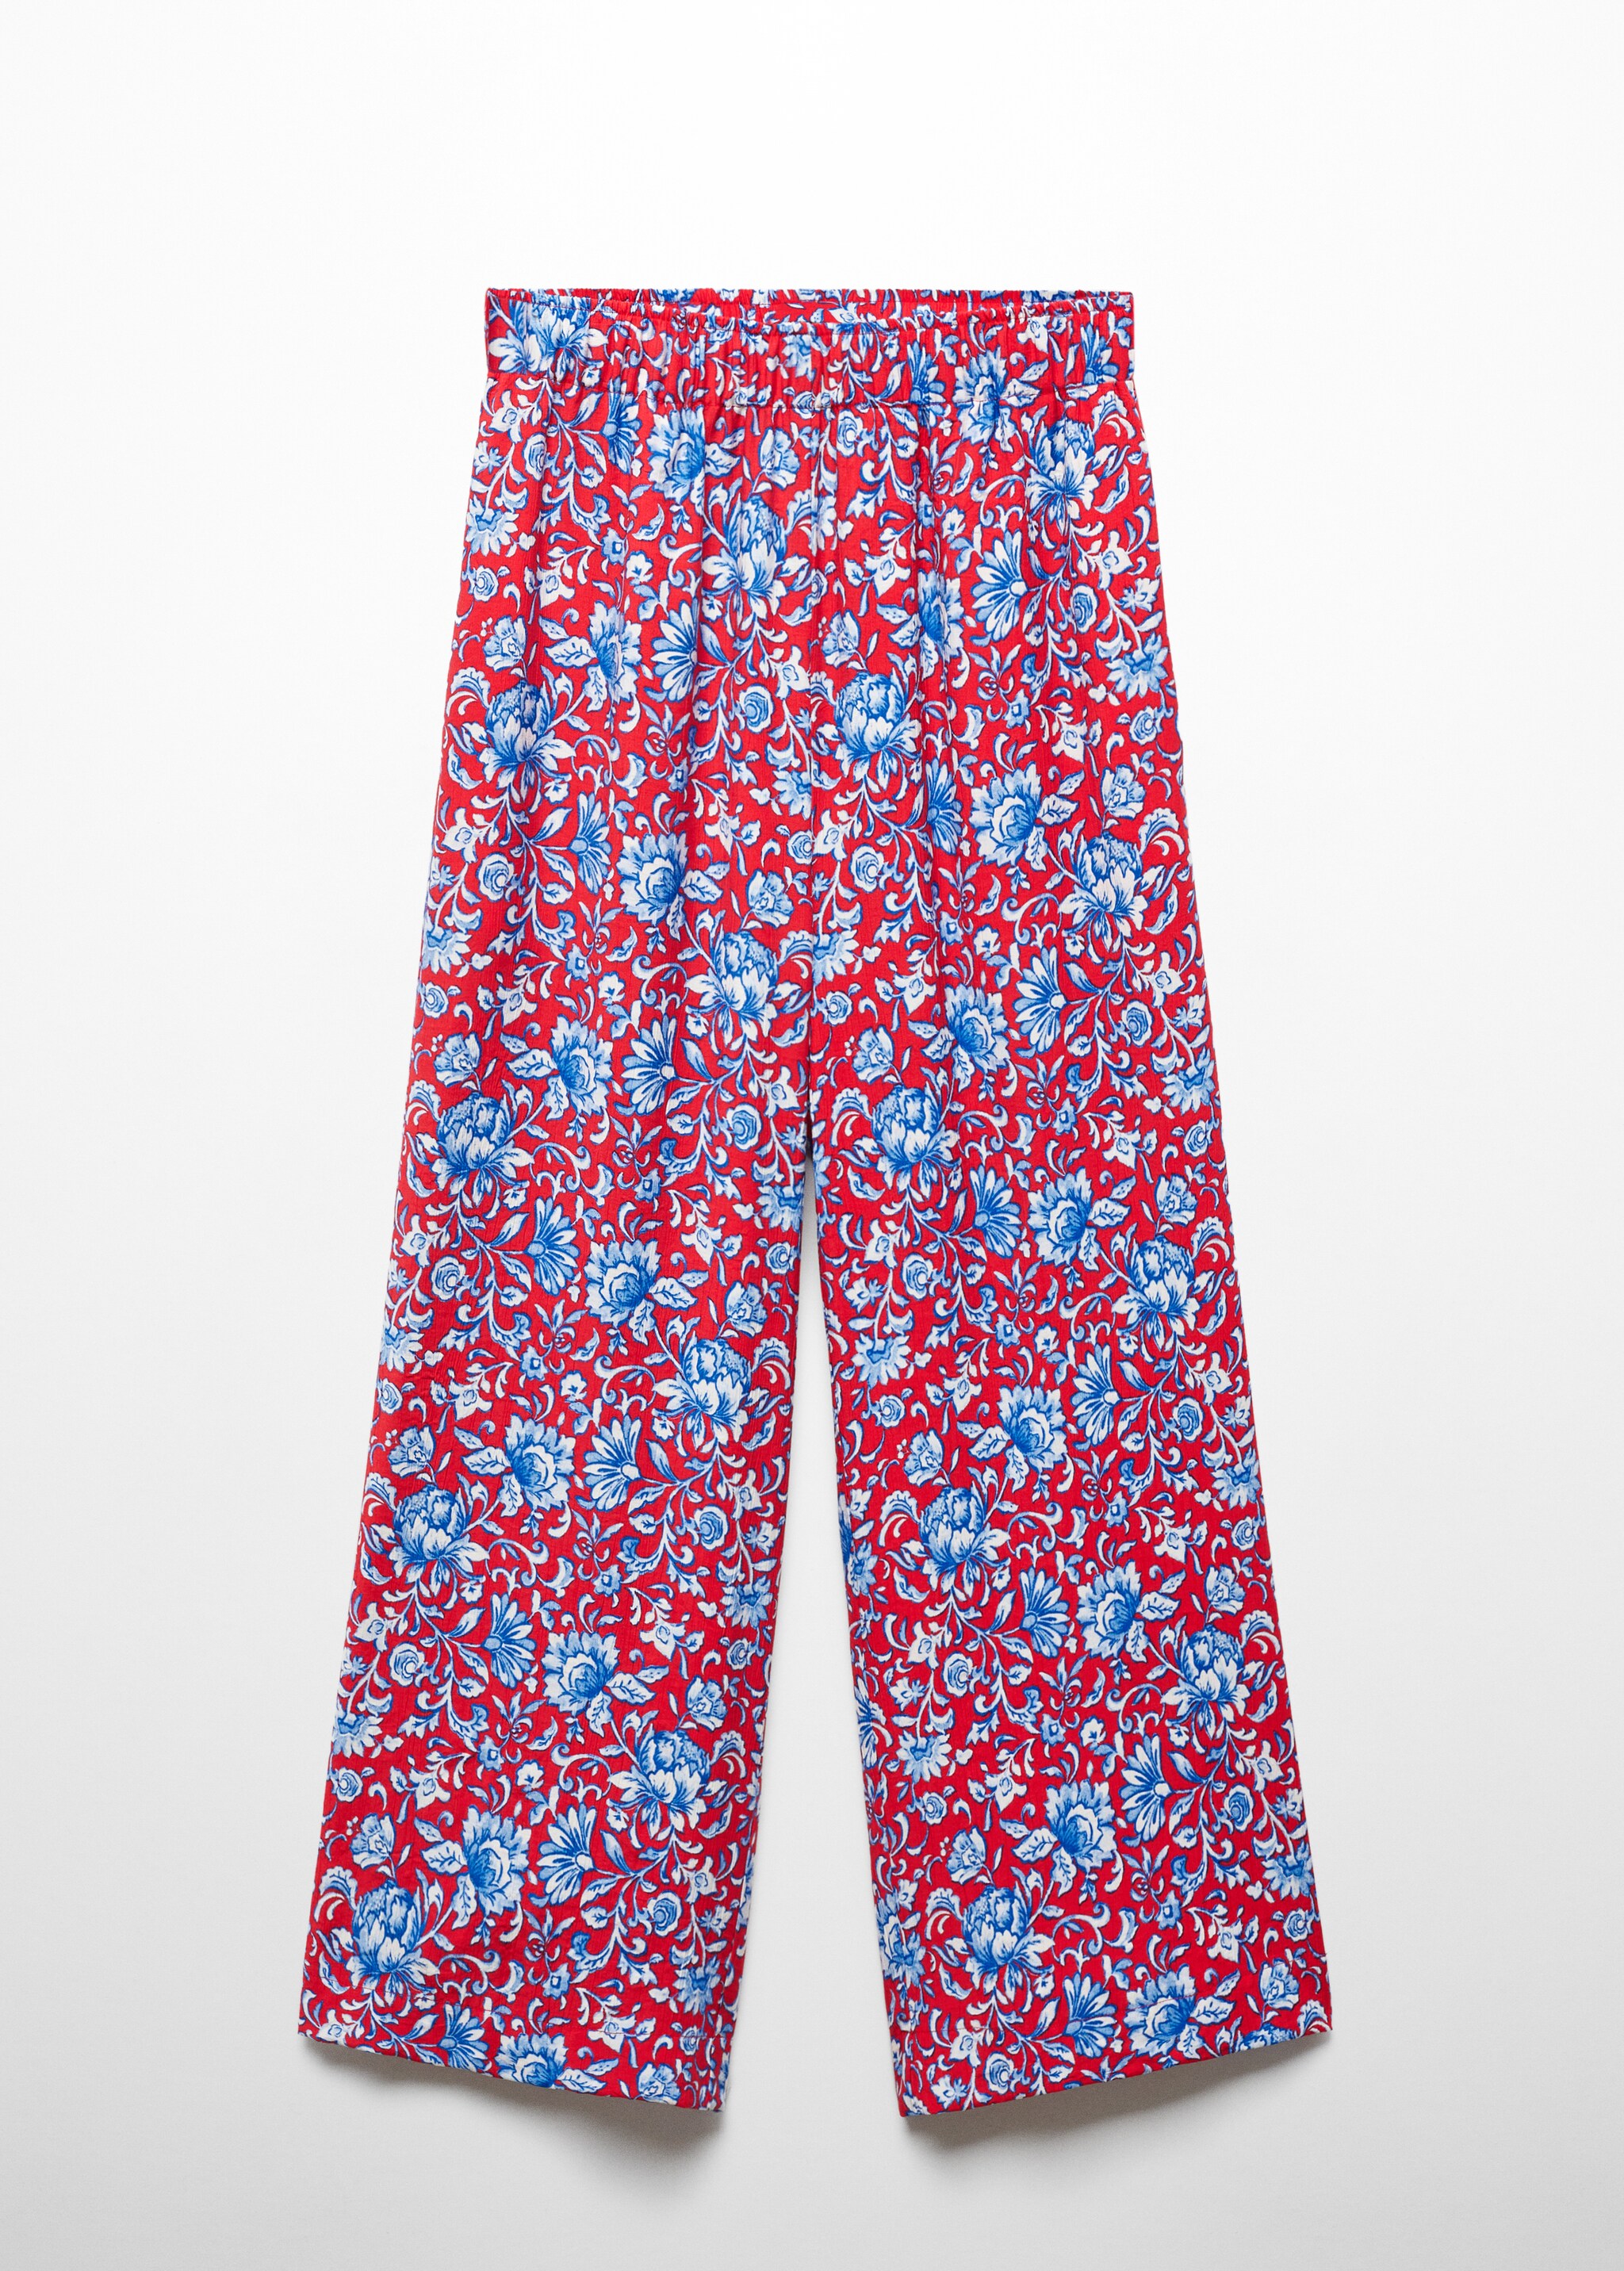 Pantalón culotte estampado floral - Artículo sin modelo